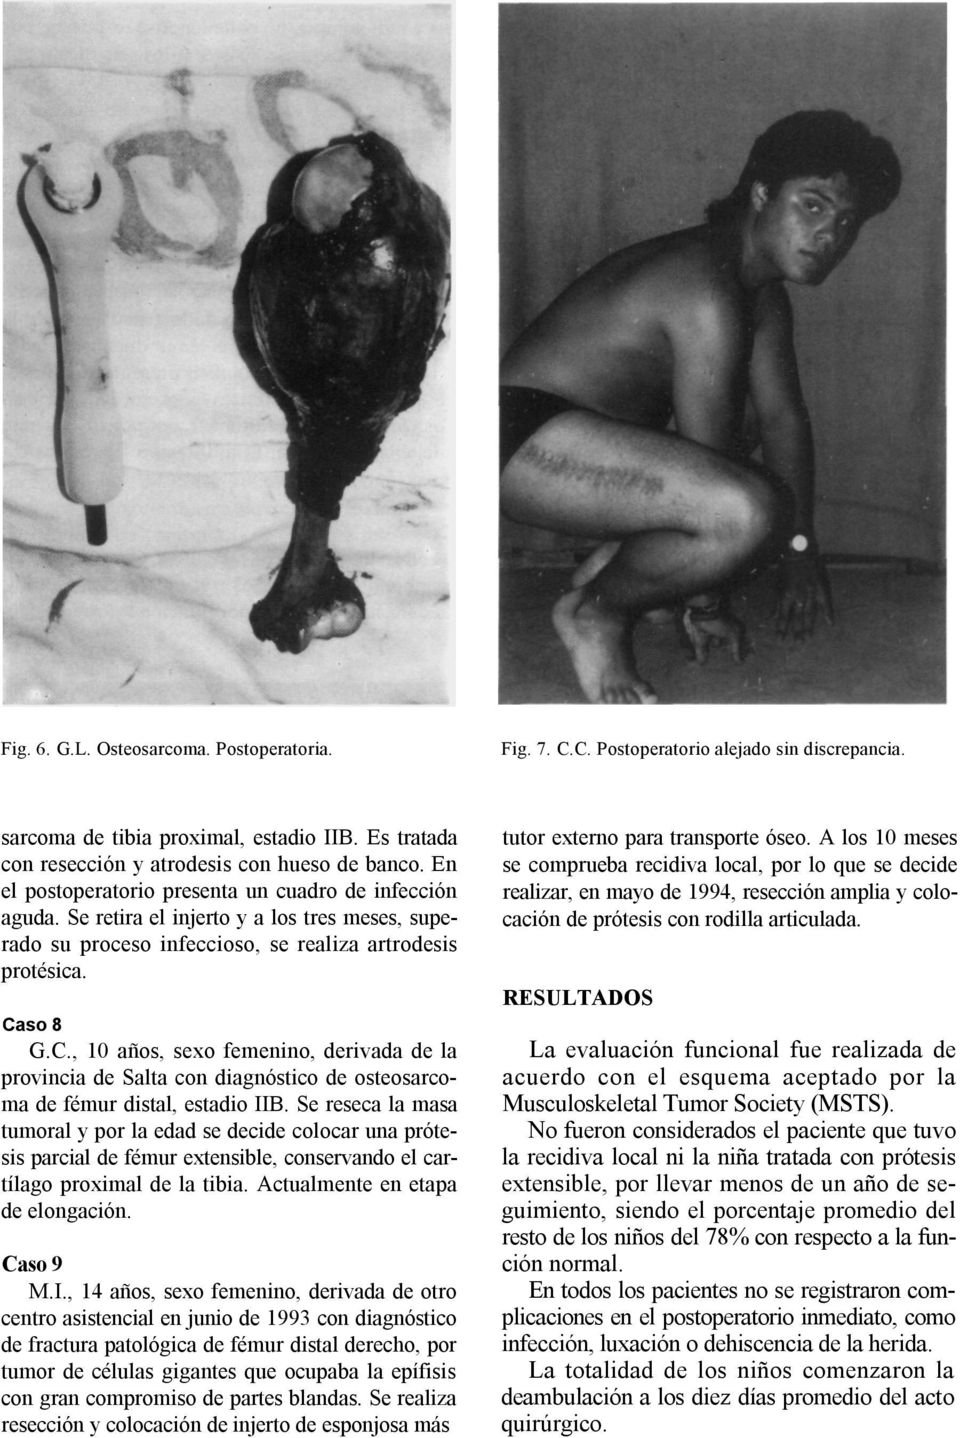 so 8 G.C., 10 años, sexo femenino, derivada de la provincia de Salta con diagnóstico de osteosarcoma de fémur distal, estadio IIB.